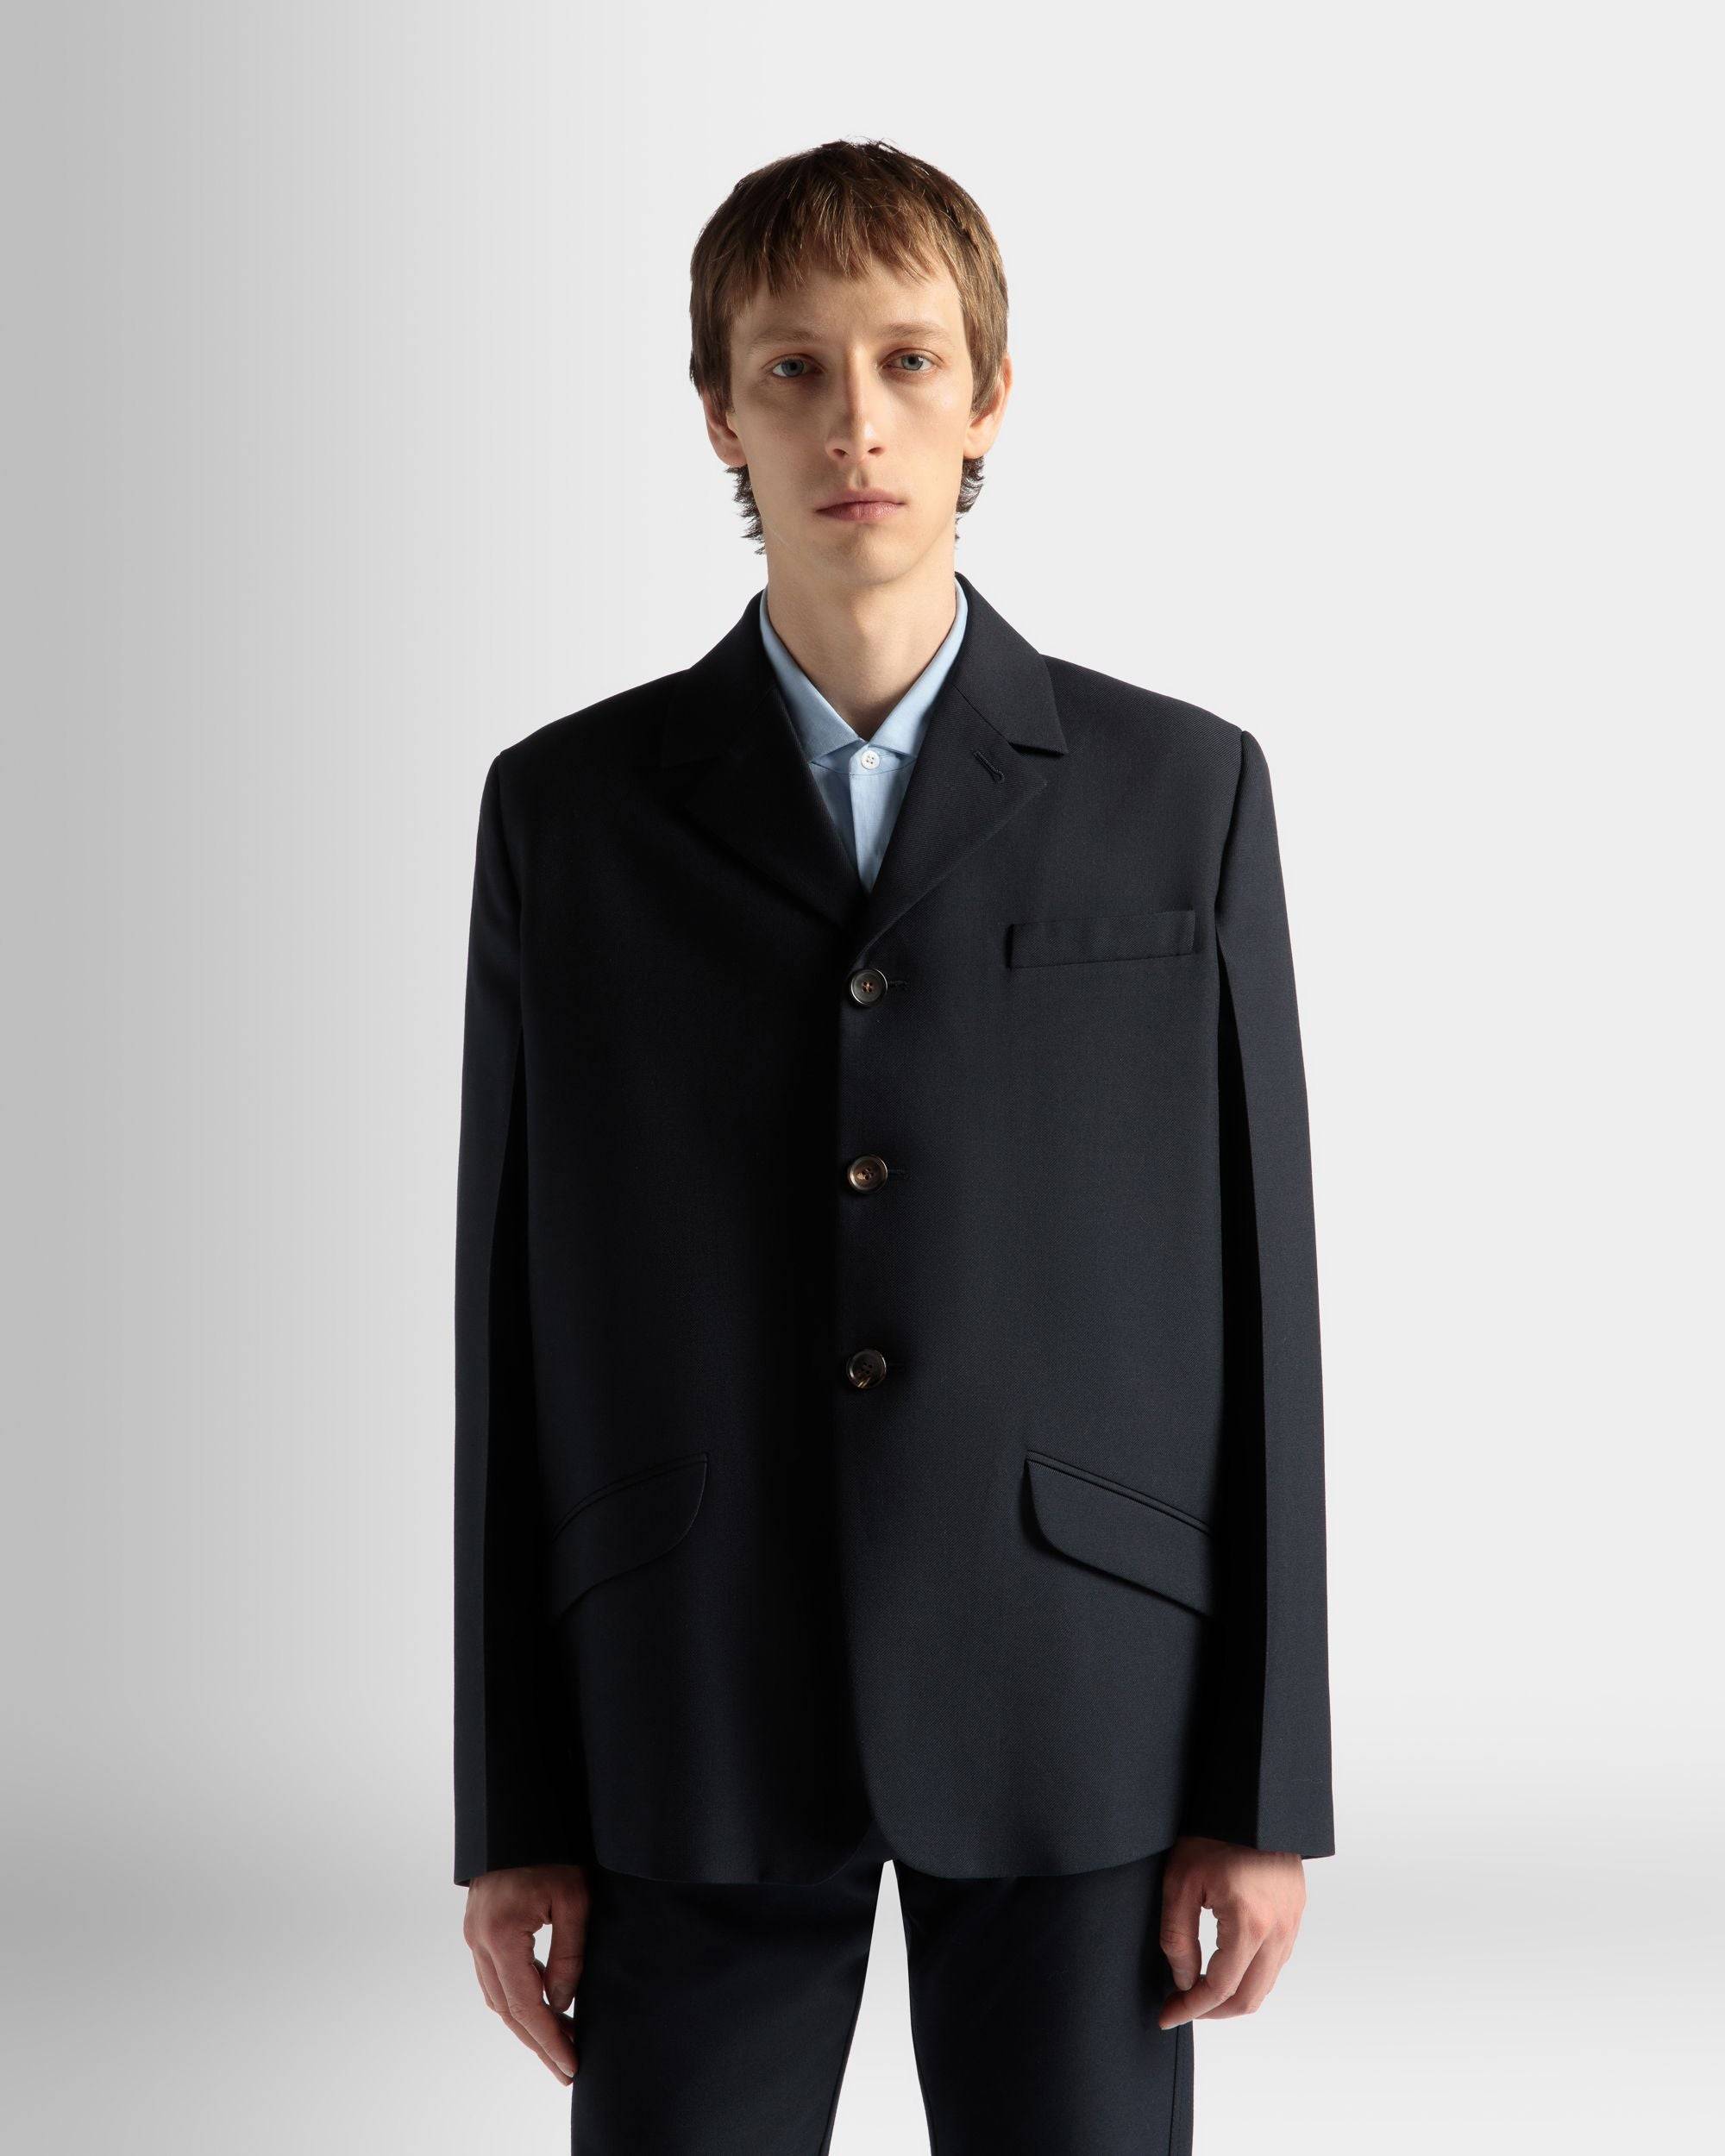 Jacket in Navy Blue Wool Blend - Men's - Bally - 03